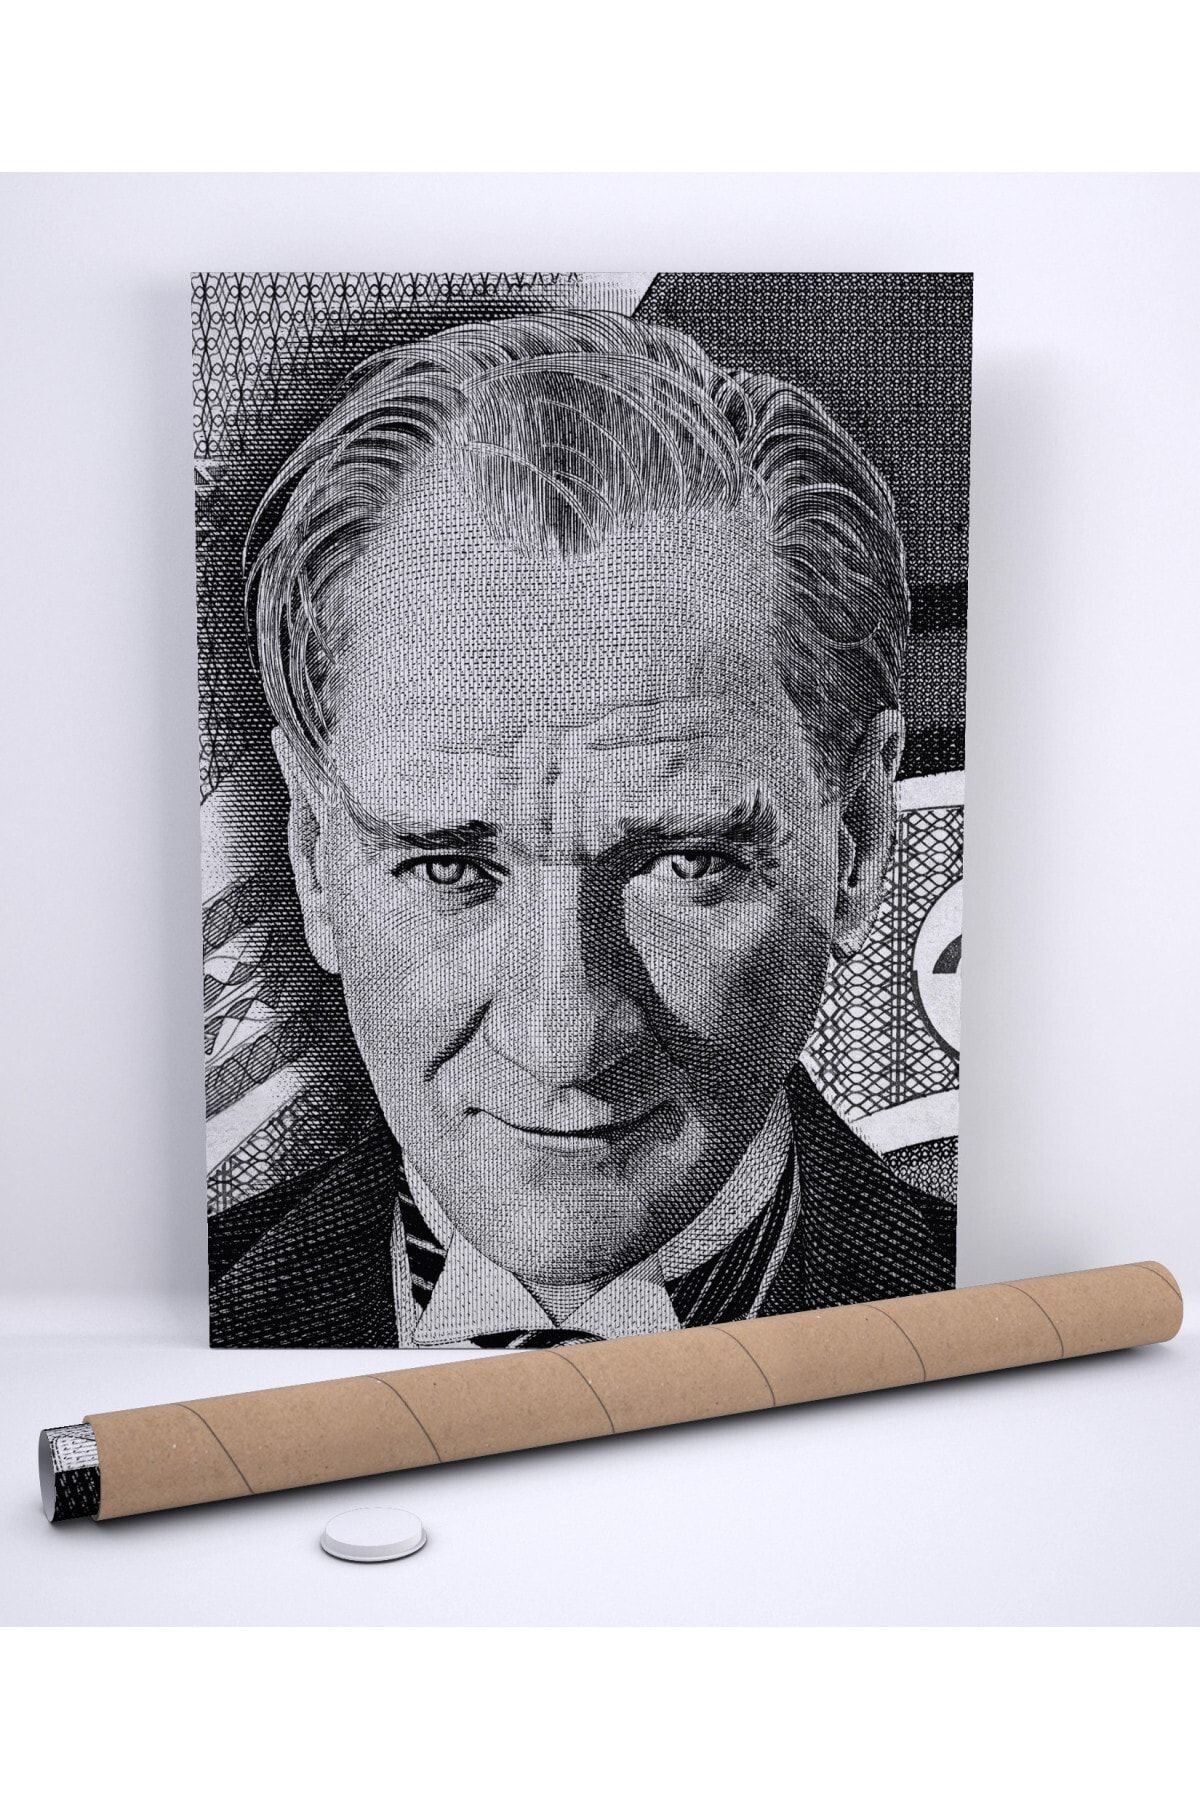 Denizposter Atatürk Kağıt Para Üzerindeki Gülen Siyah Beyaz Resmi, Makam Posteri 70x100